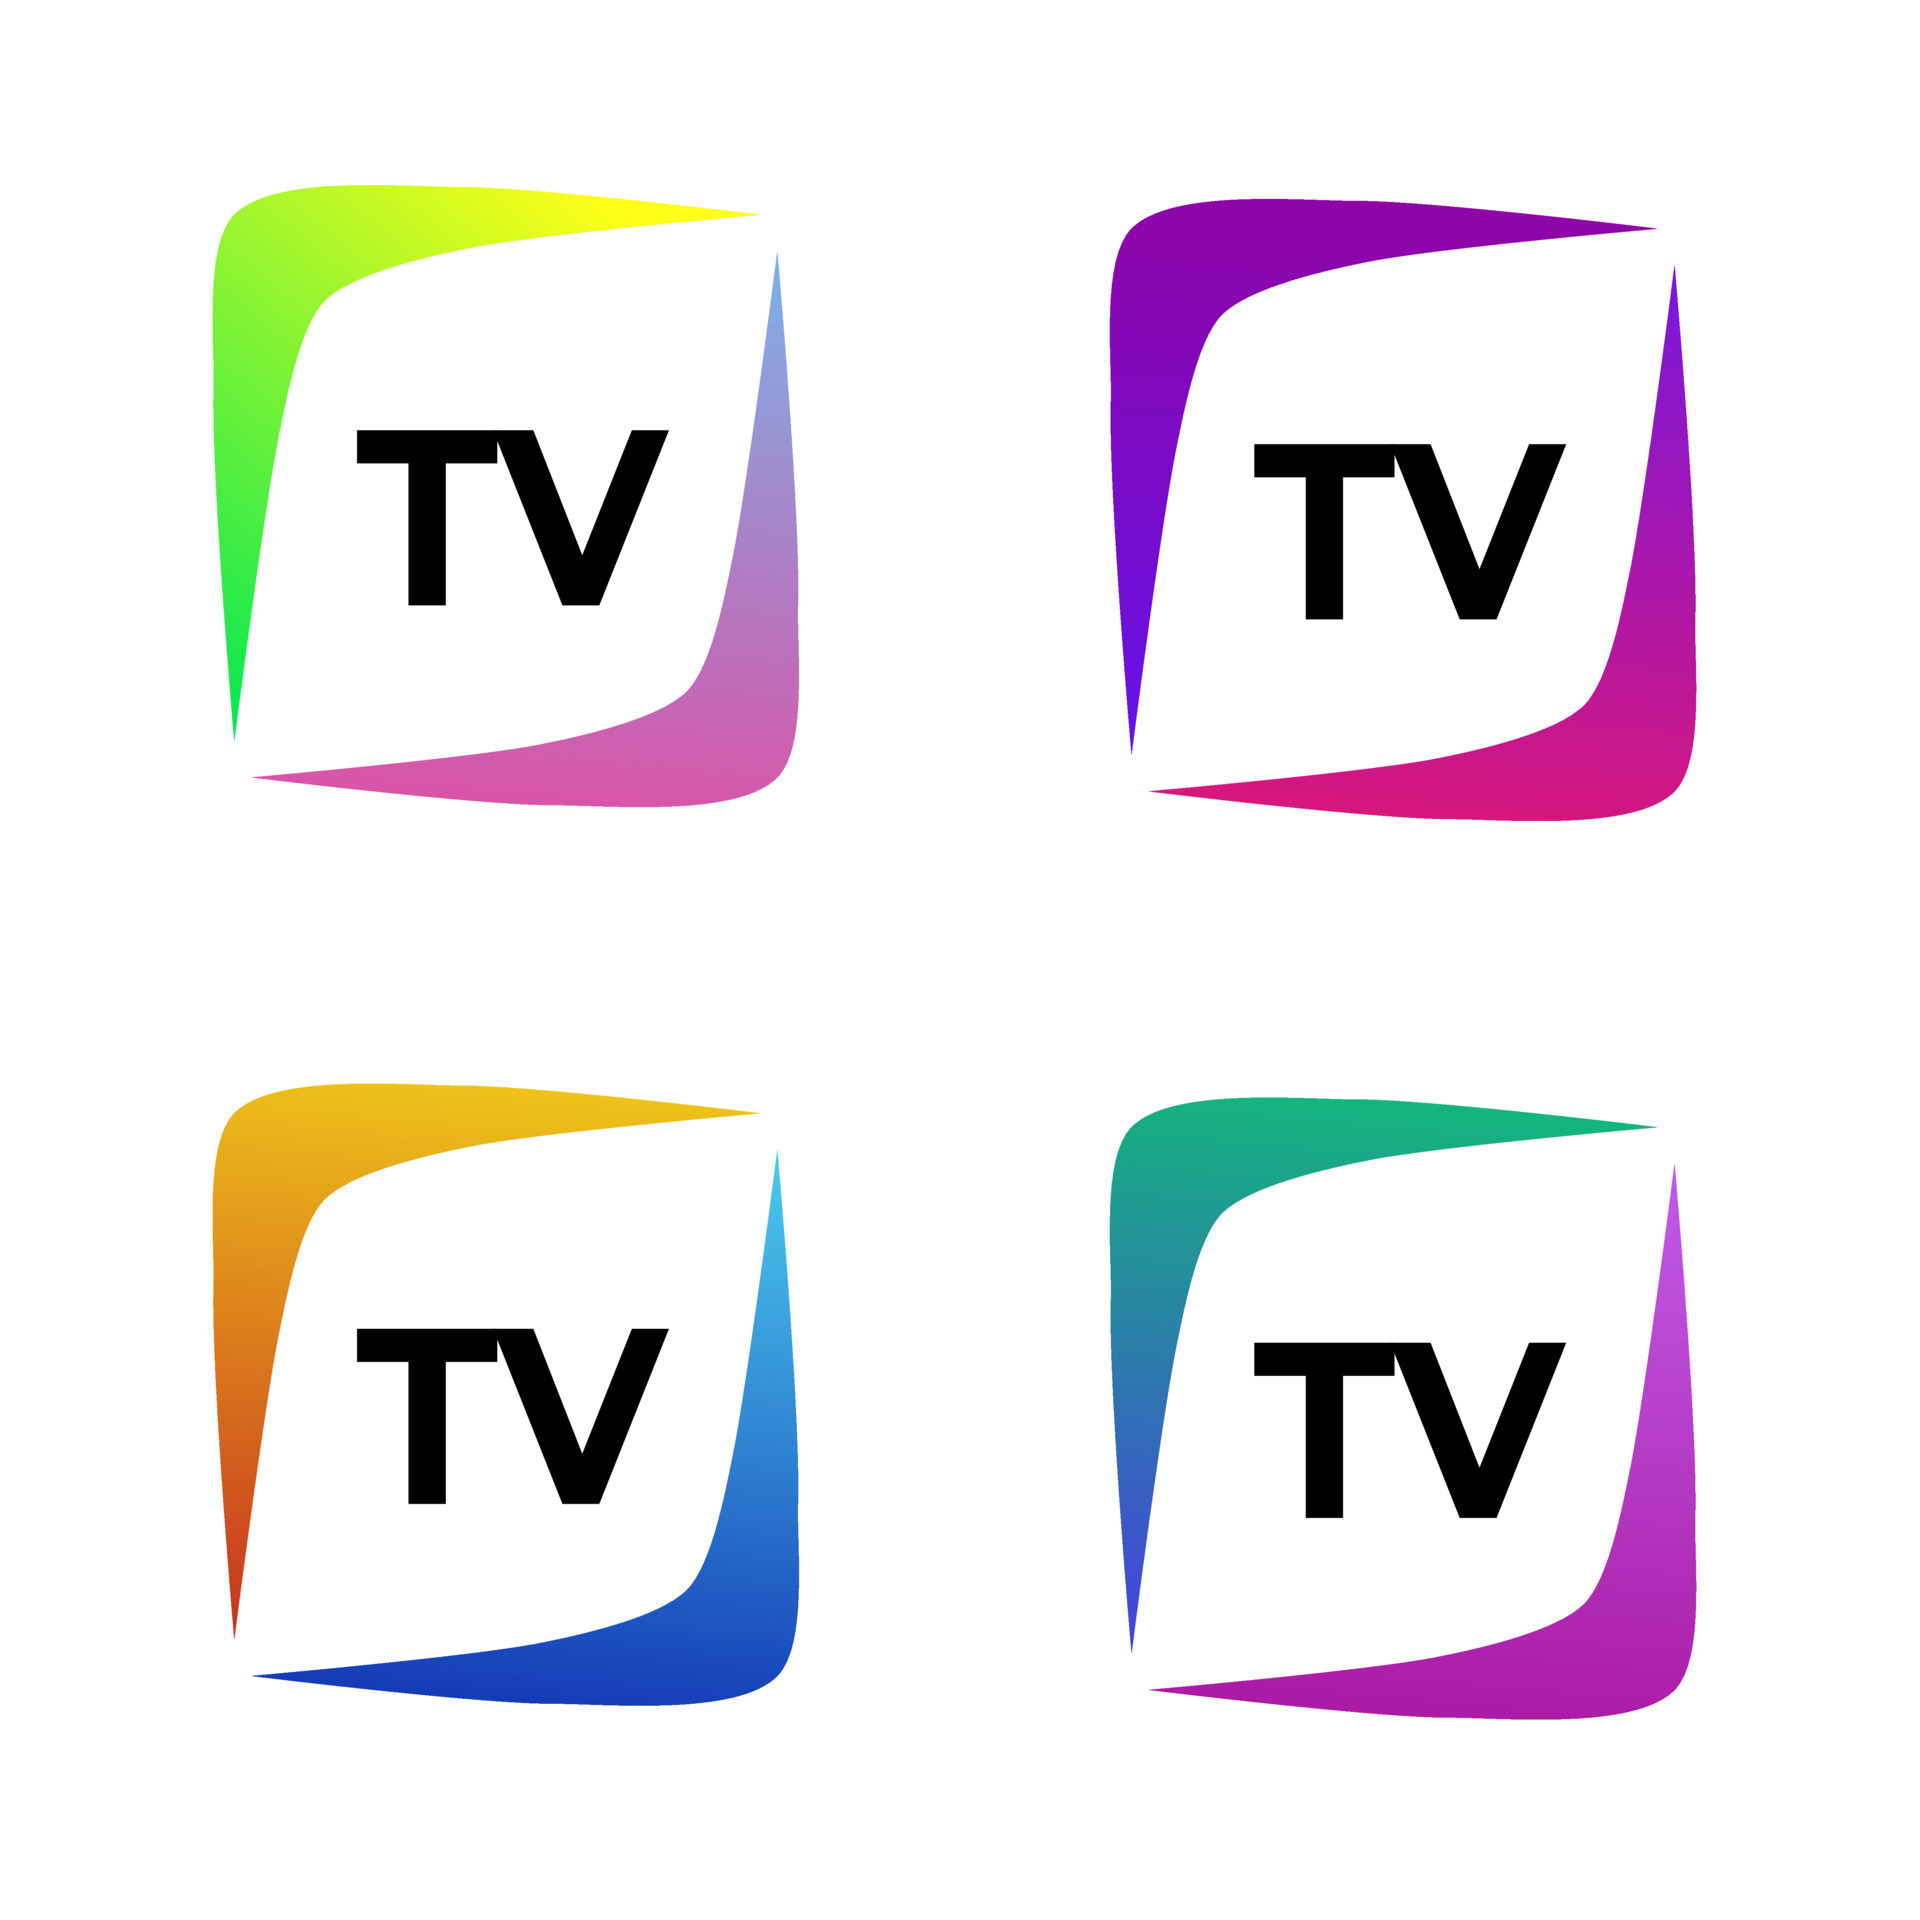 TV or Television channel logo design template  Stock Illustration  64249385  PIXTA